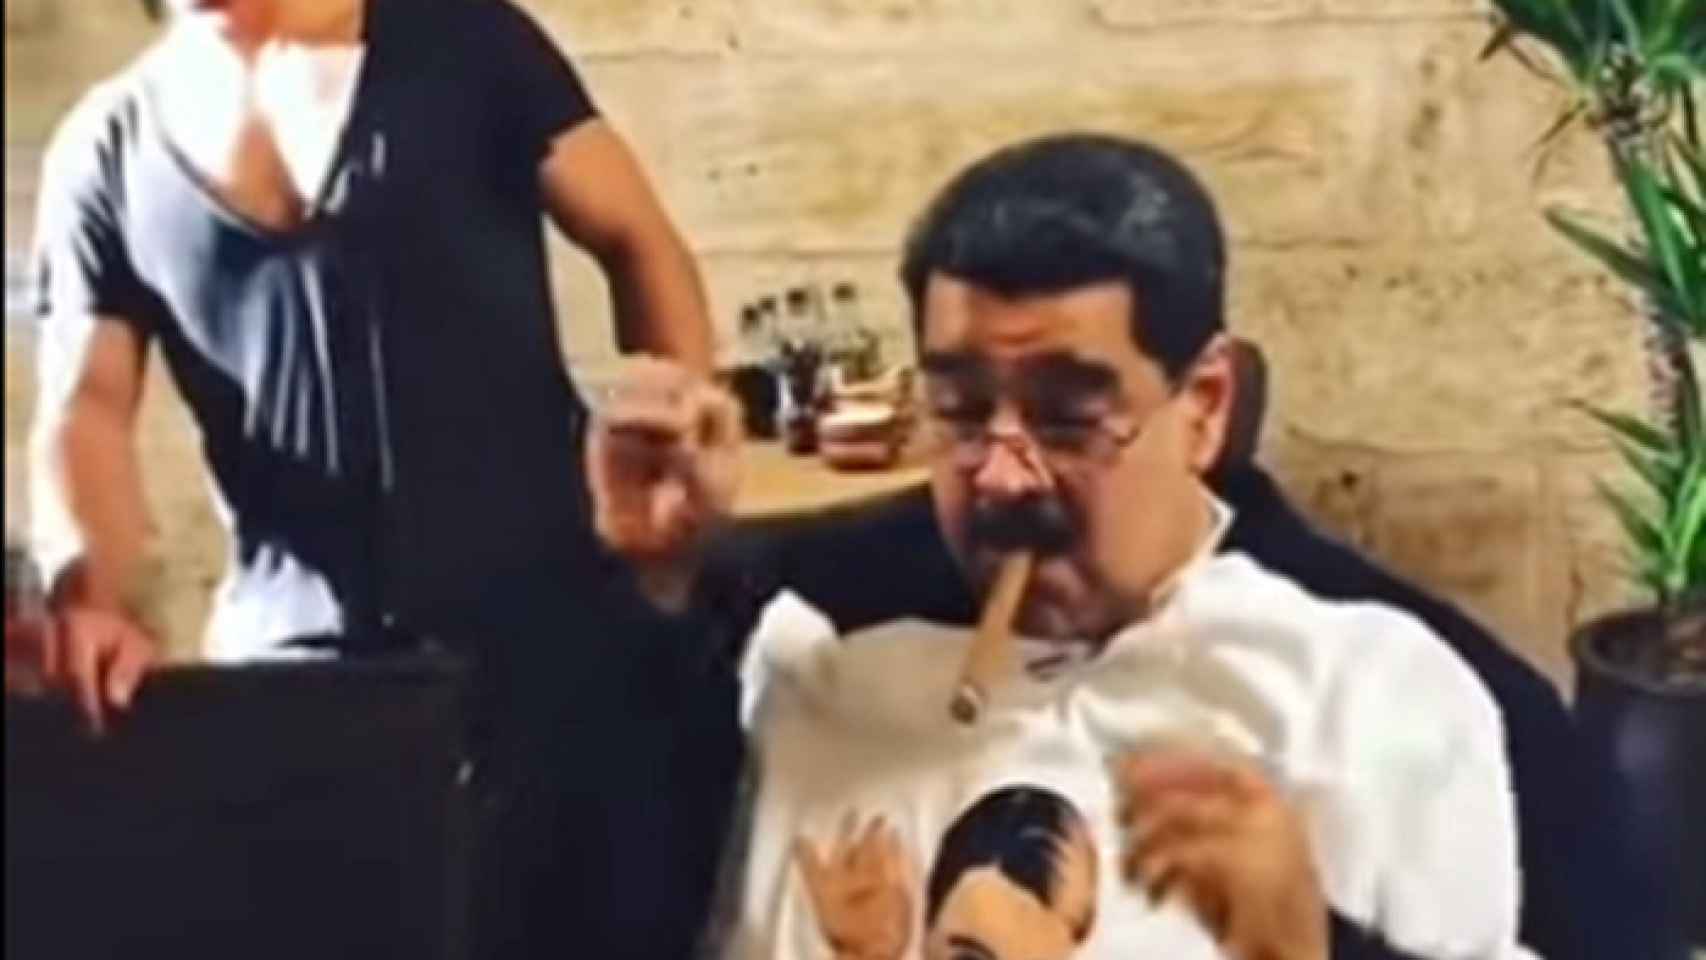 Maduro, cenando un restaurante de lujo